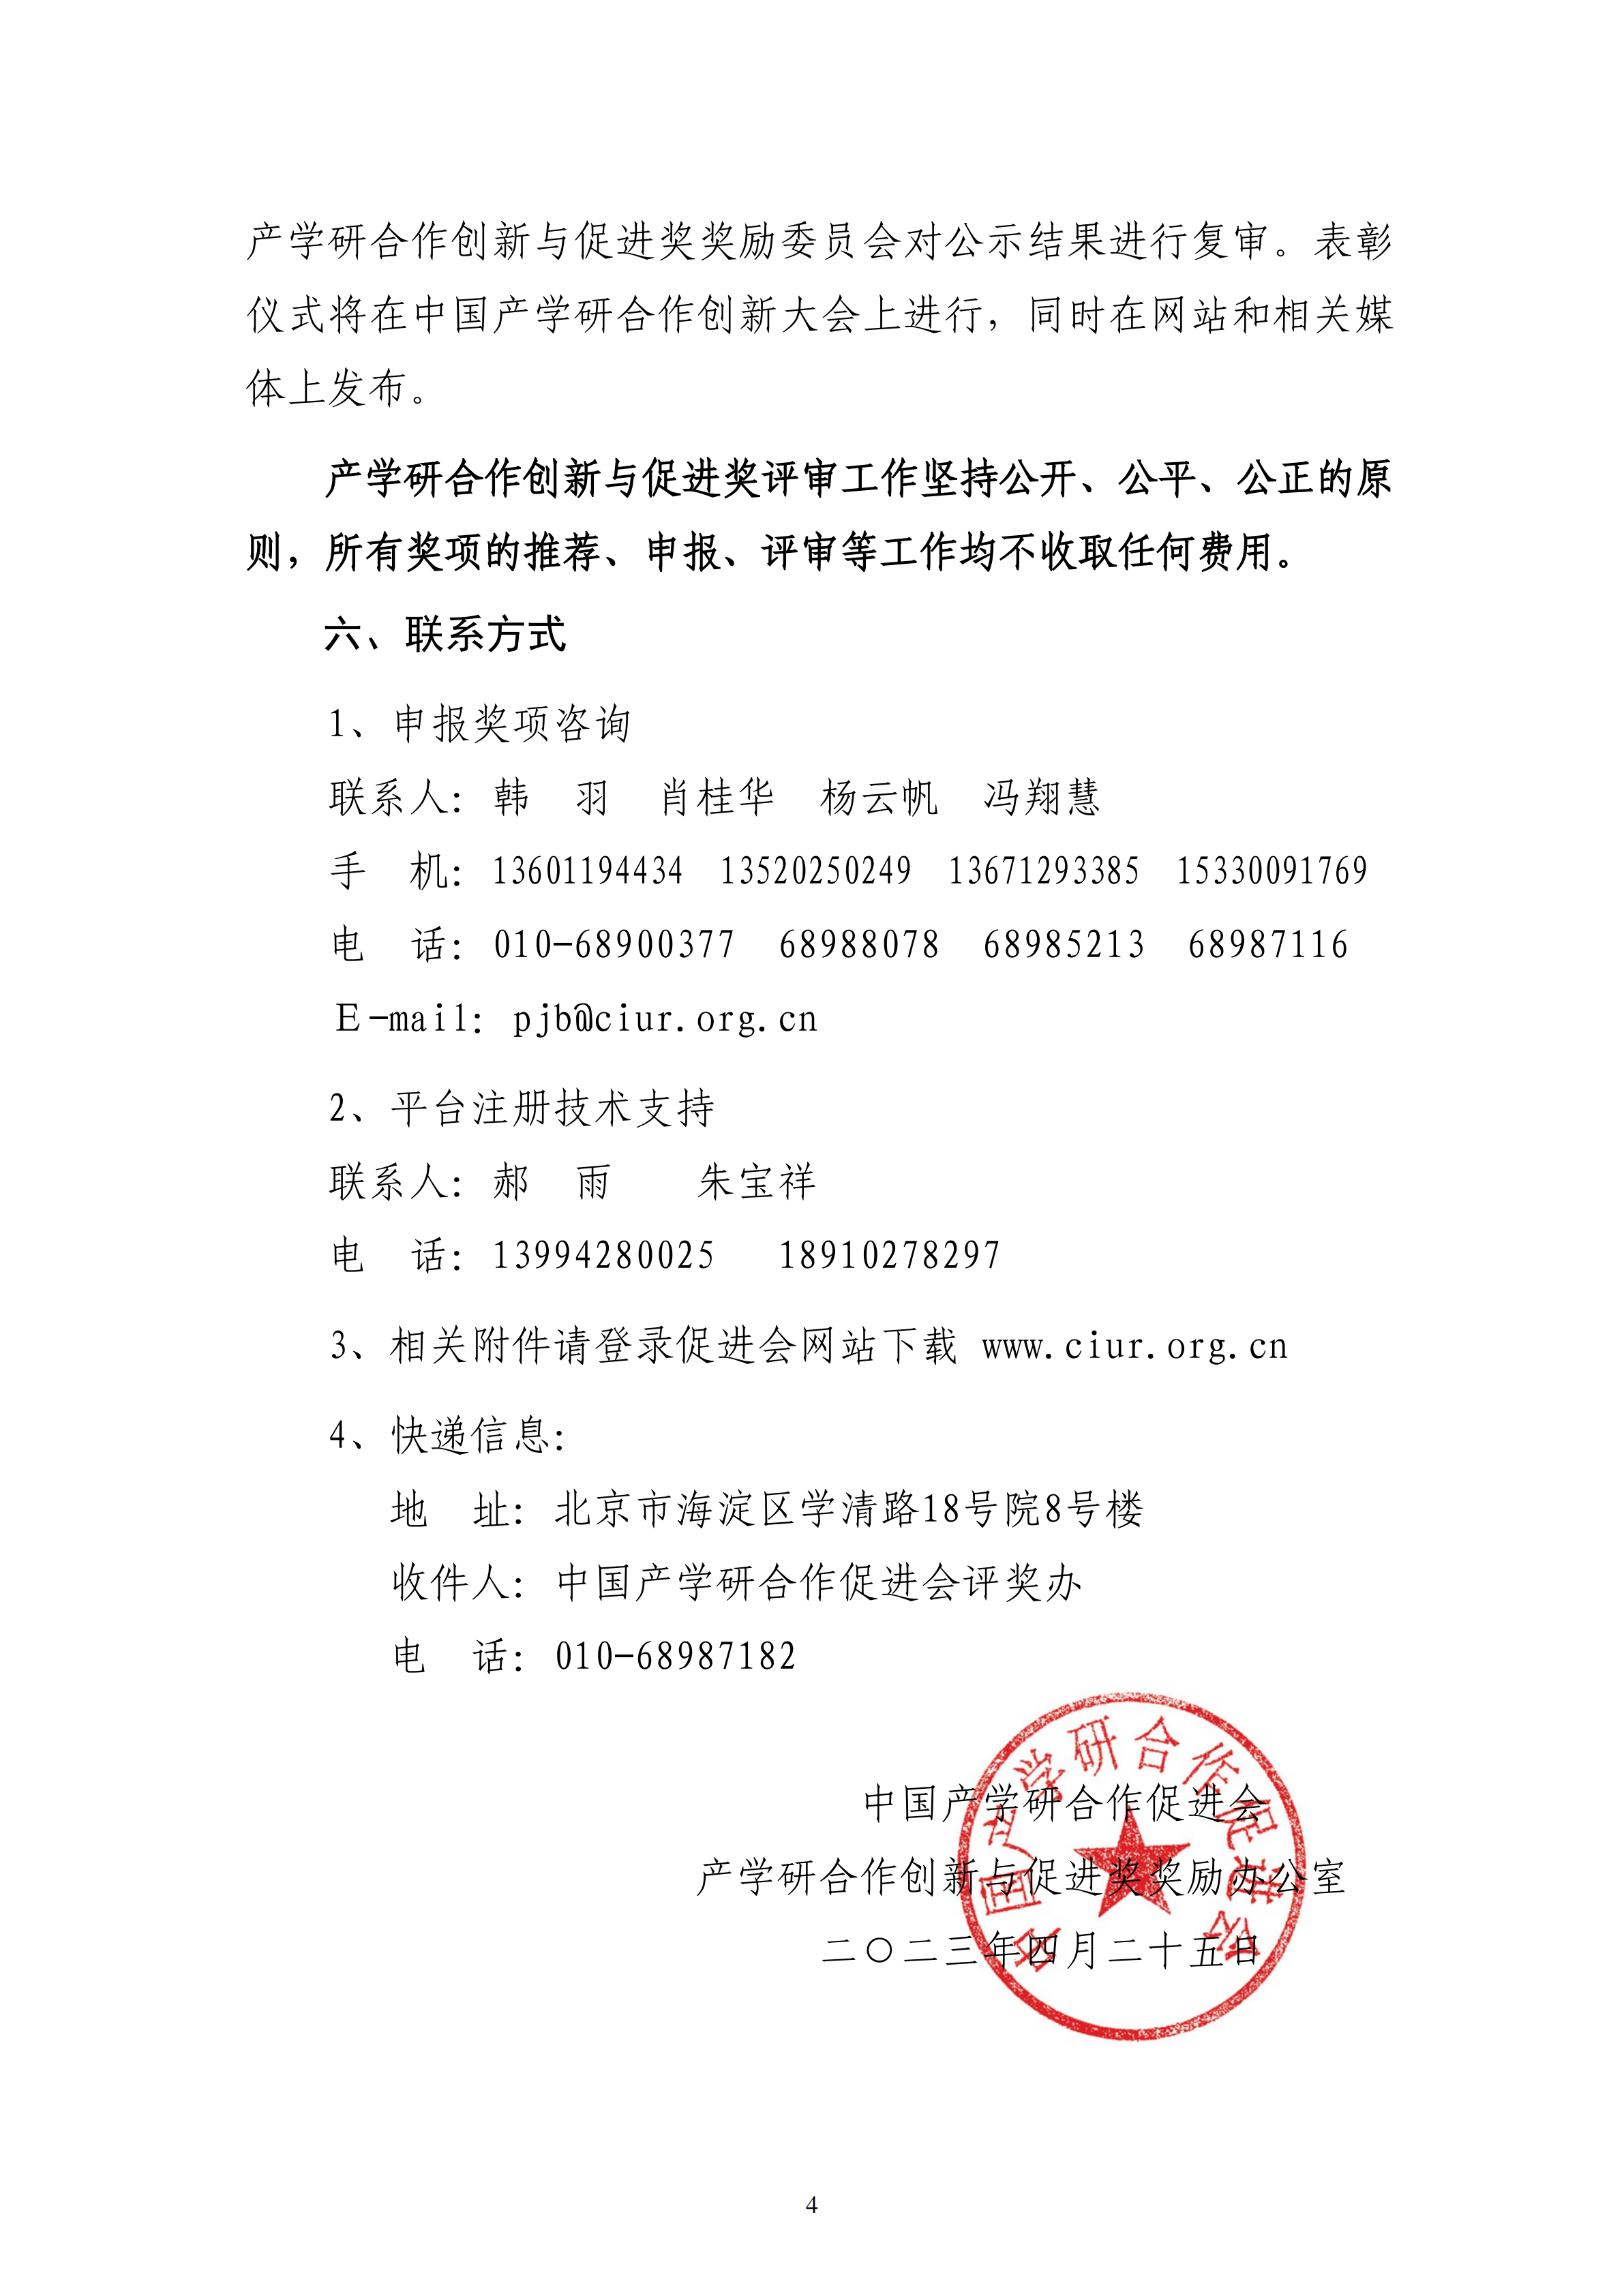 2023年中国产学研合作促进会产学研合作创新与促进奖申报通知_03.png